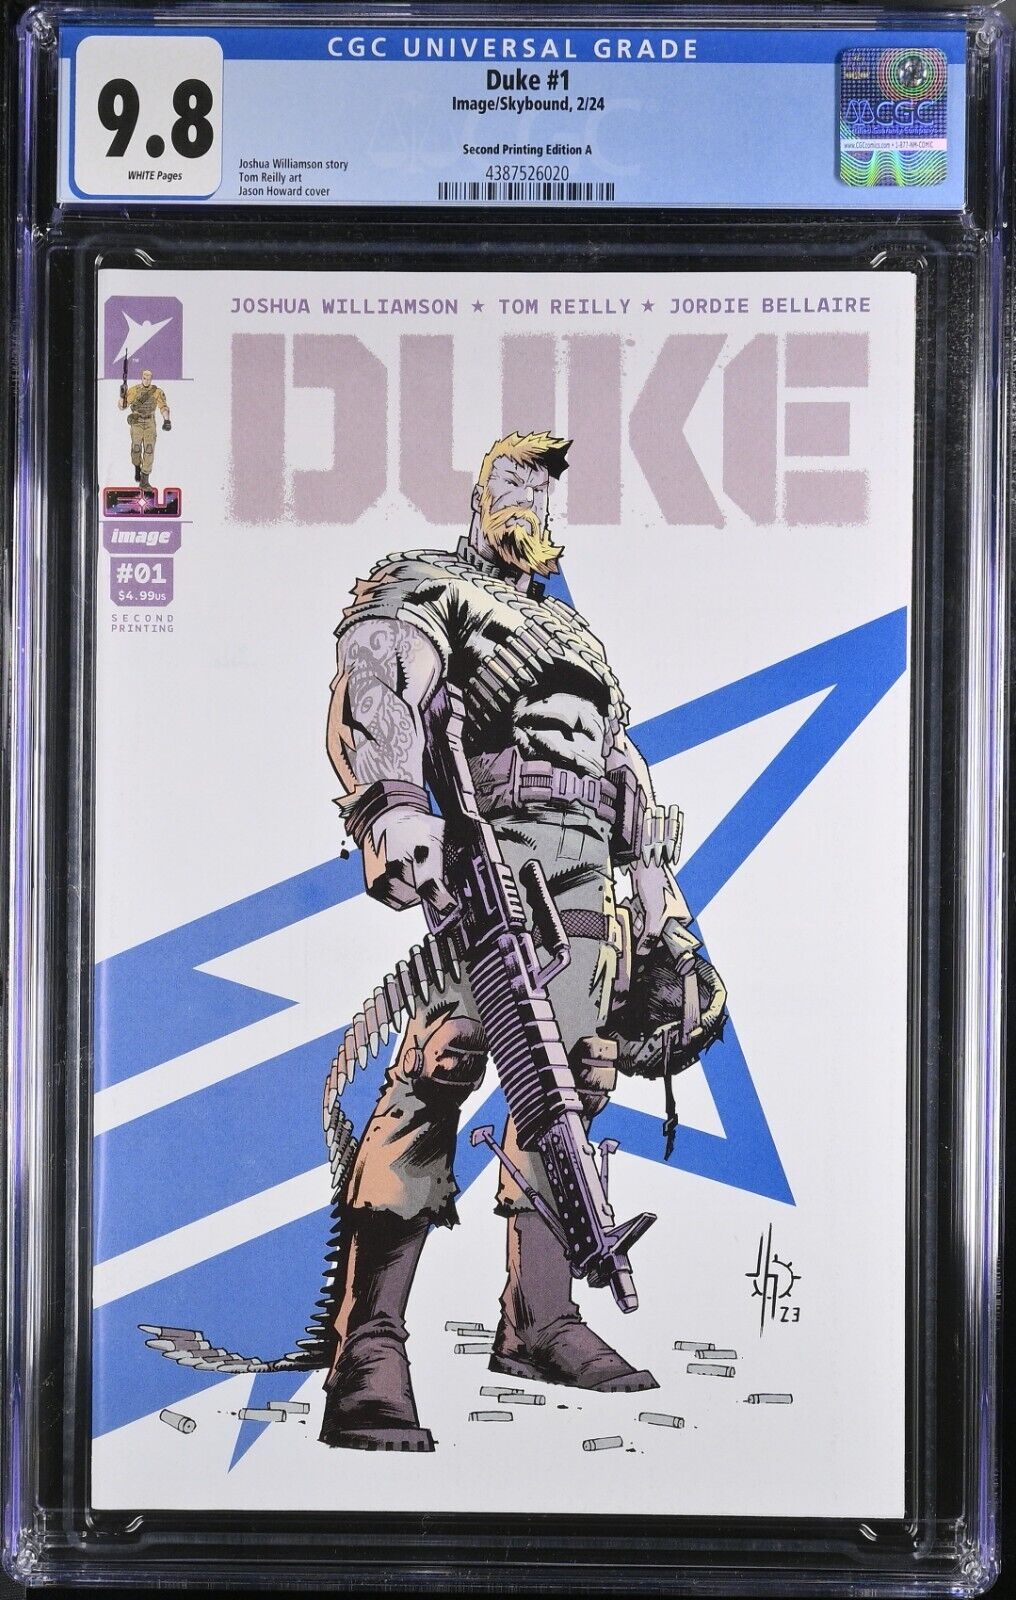 Duke #1 CGC 9.8 2nd Print Rock N Roll Cover A Image 2024 GI Joe Transformers WP